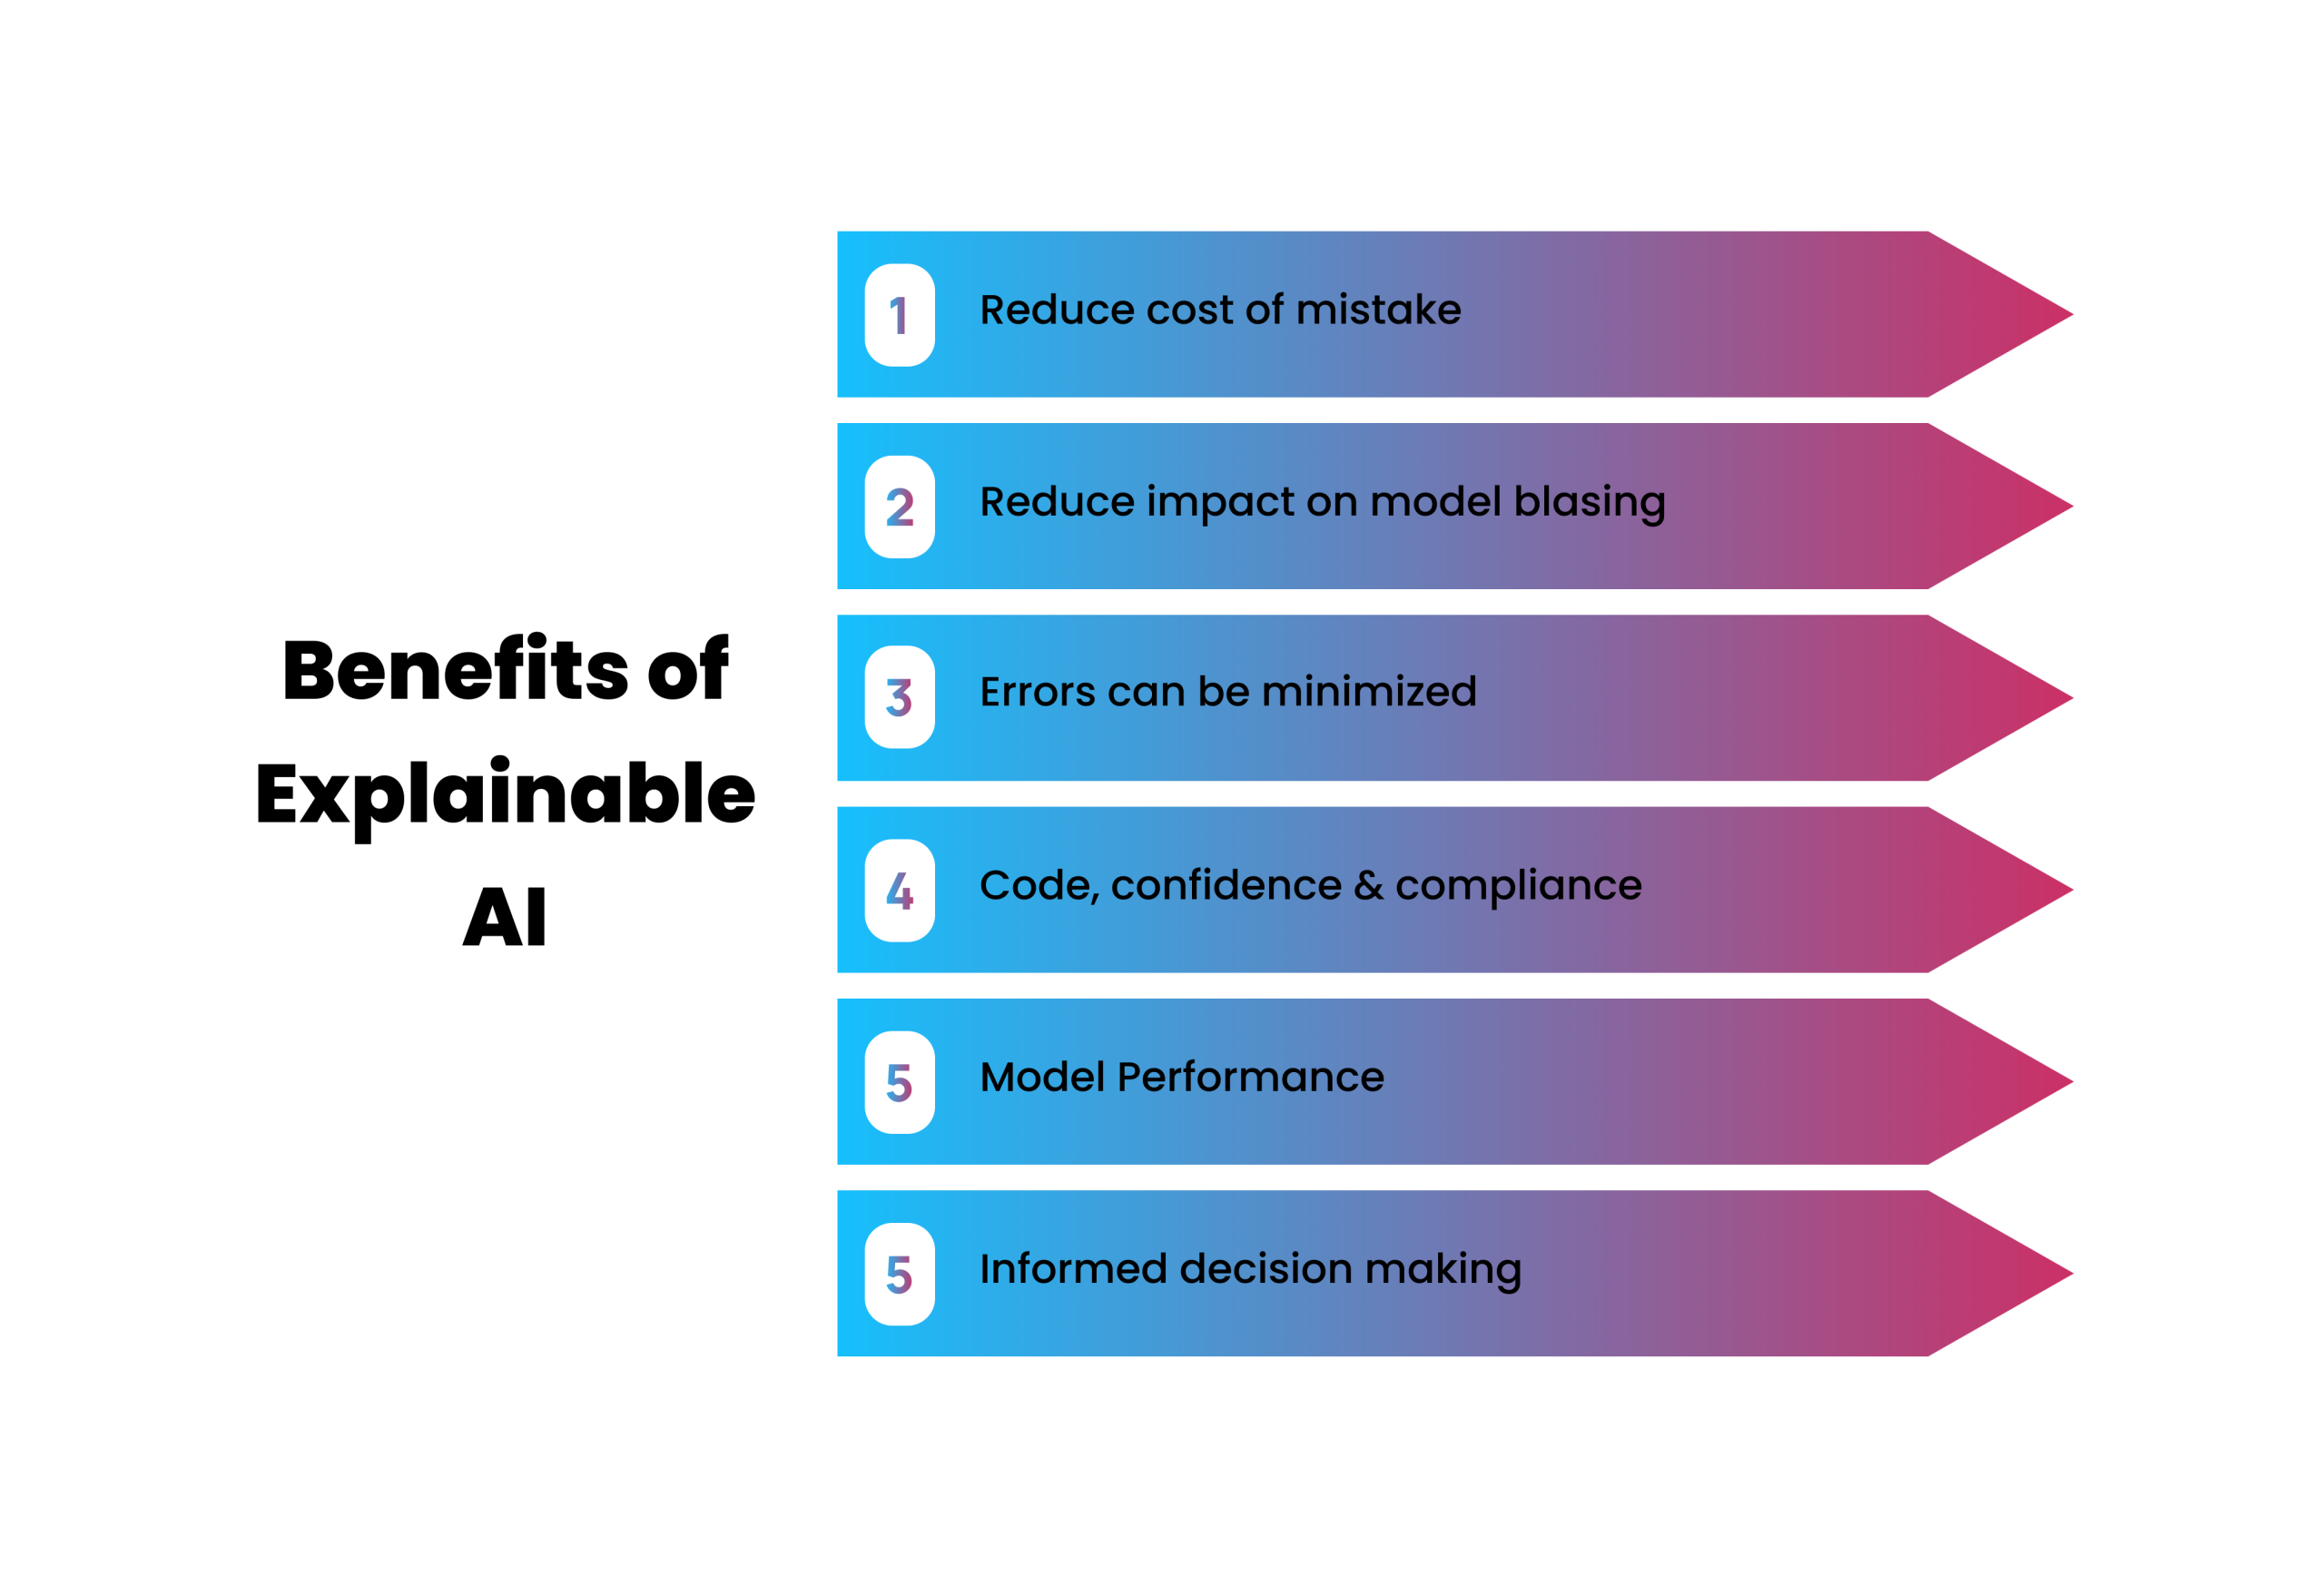 Benefits of Explainable AI